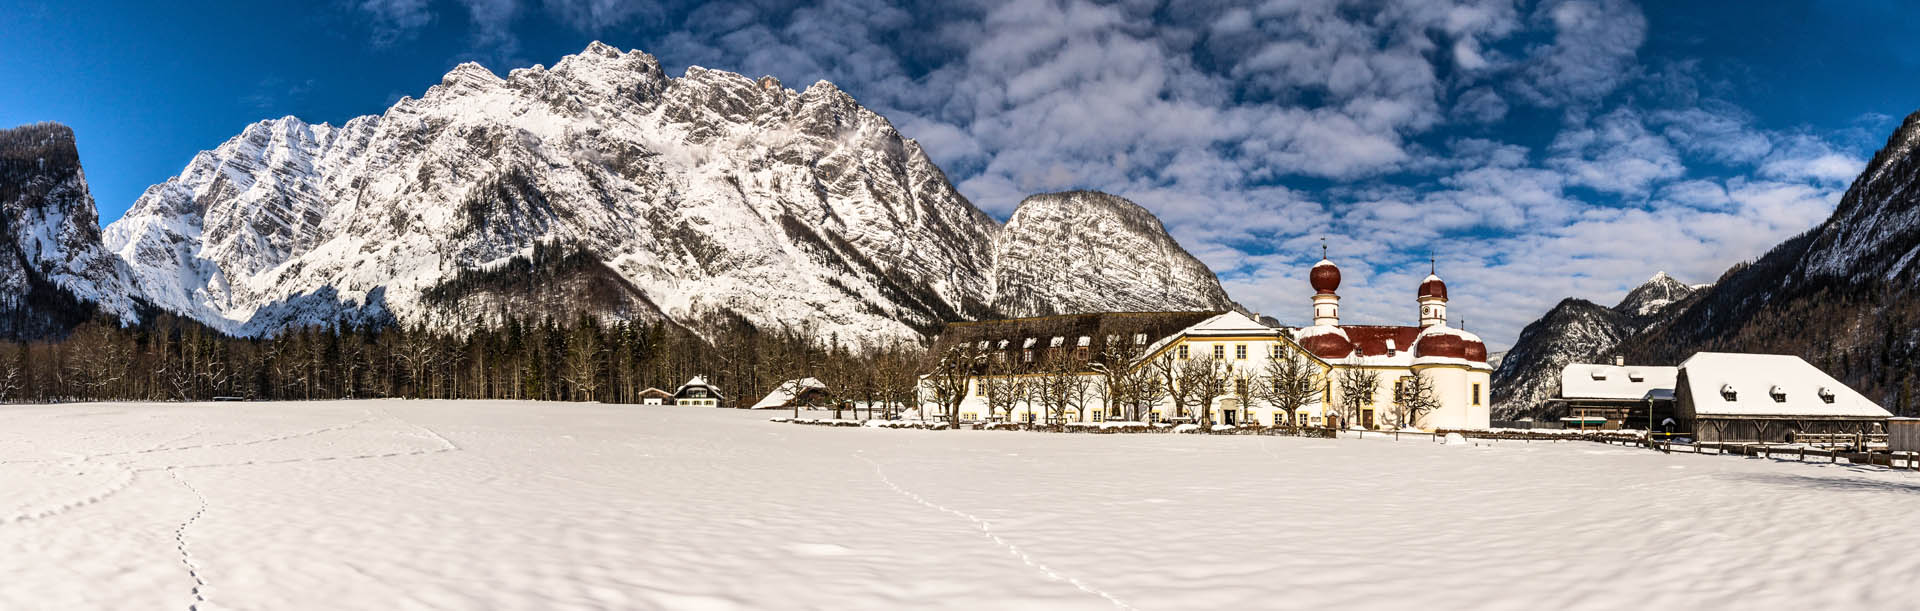 Haus Alpengruss Bischofswiesen, St. Batolomae im Winter